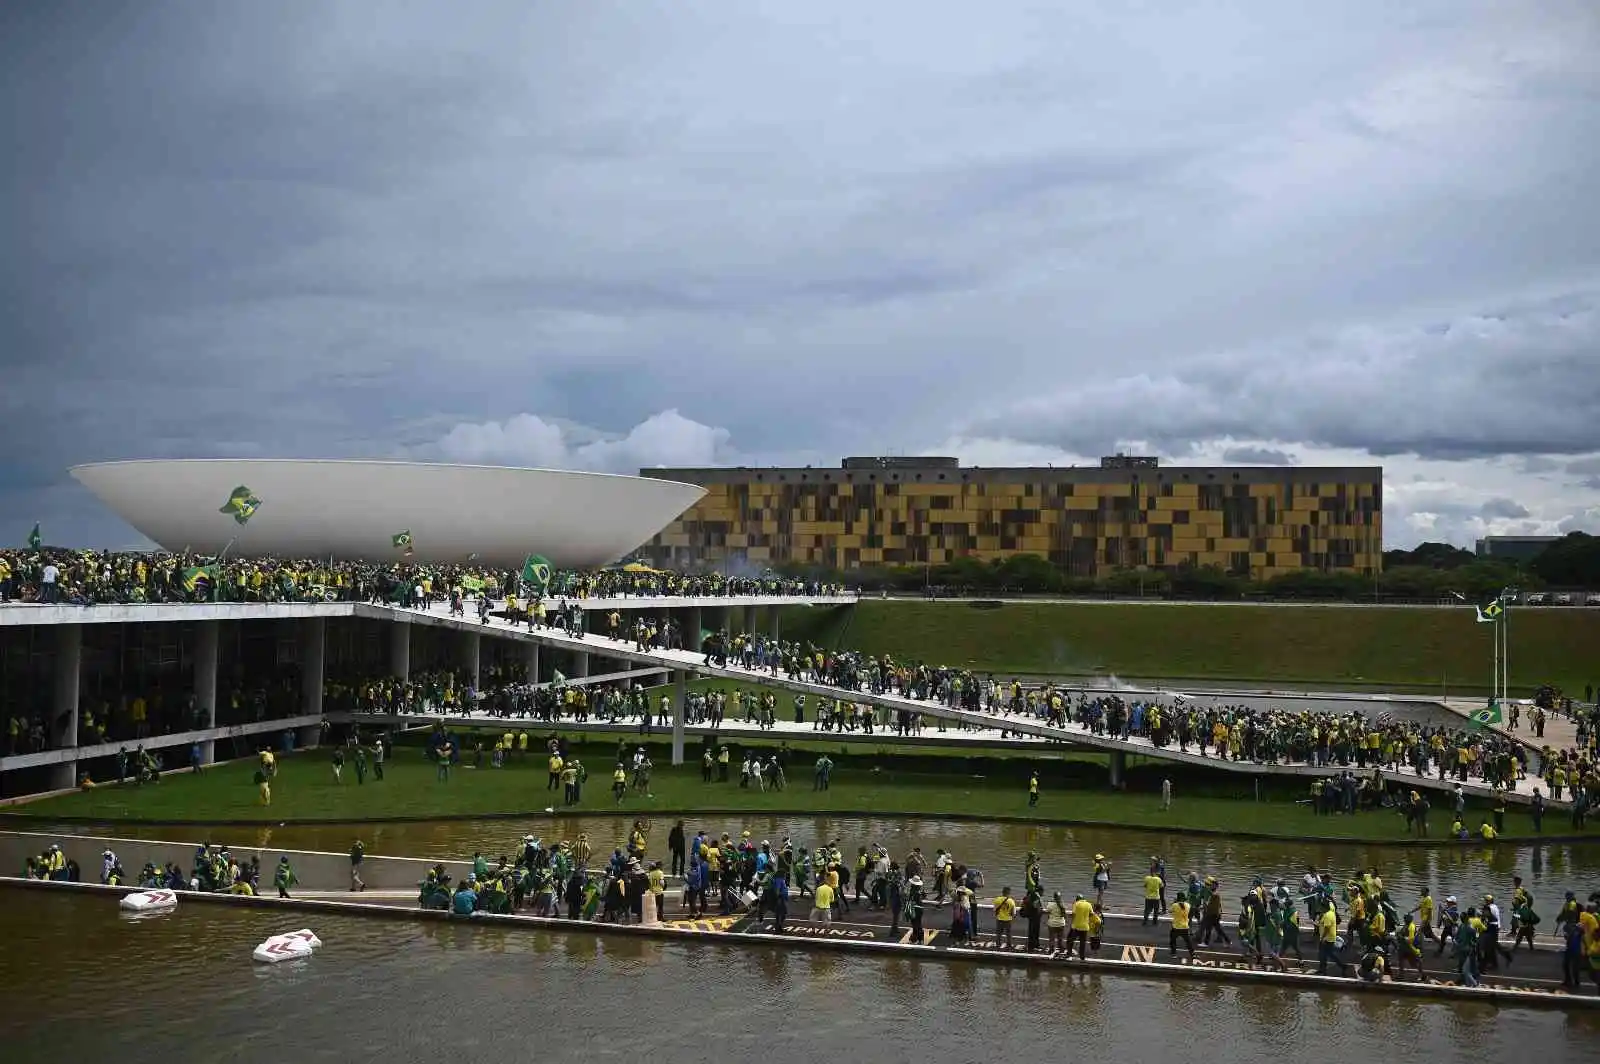 Brezilya, ABD'den Bolsonaro'nun iadesiyle ilgili resmi talepte bulunmamış
